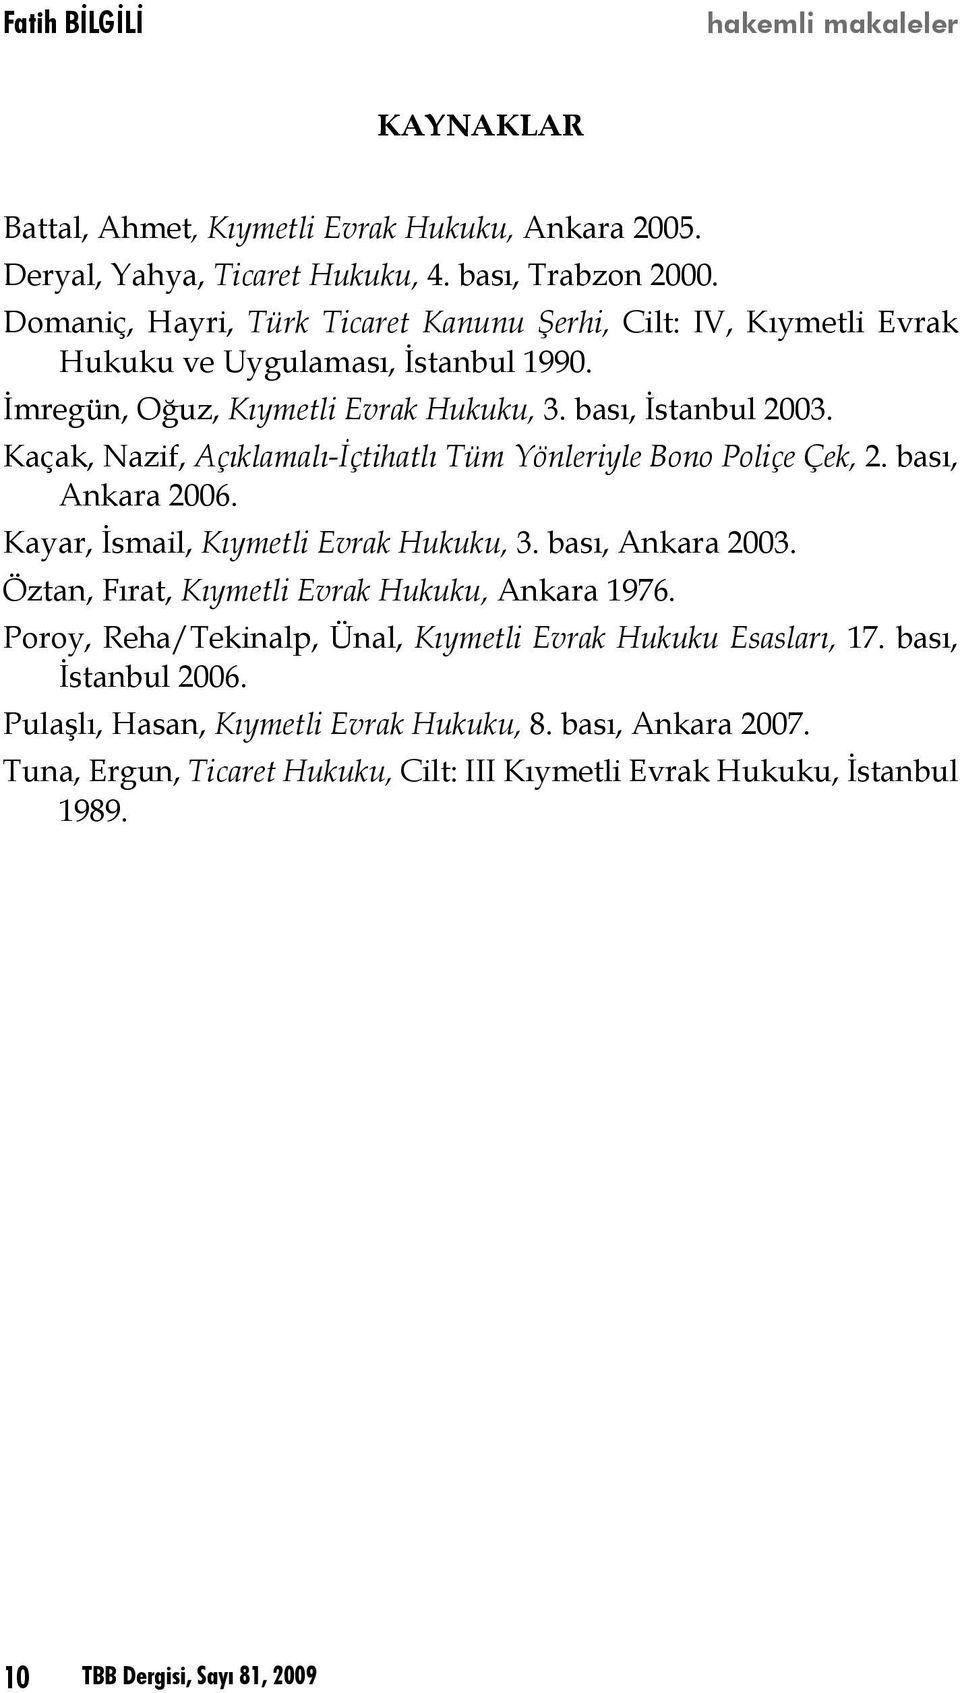 Kaçak, Nazif, Açıklamalı-İçtihatlı Tüm Yönleriyle Bono Poliçe Çek, 2. bası, Ankara 2006. Kayar, İsmail, Kıymetli Evrak Hukuku, 3. bası, Ankara 2003.